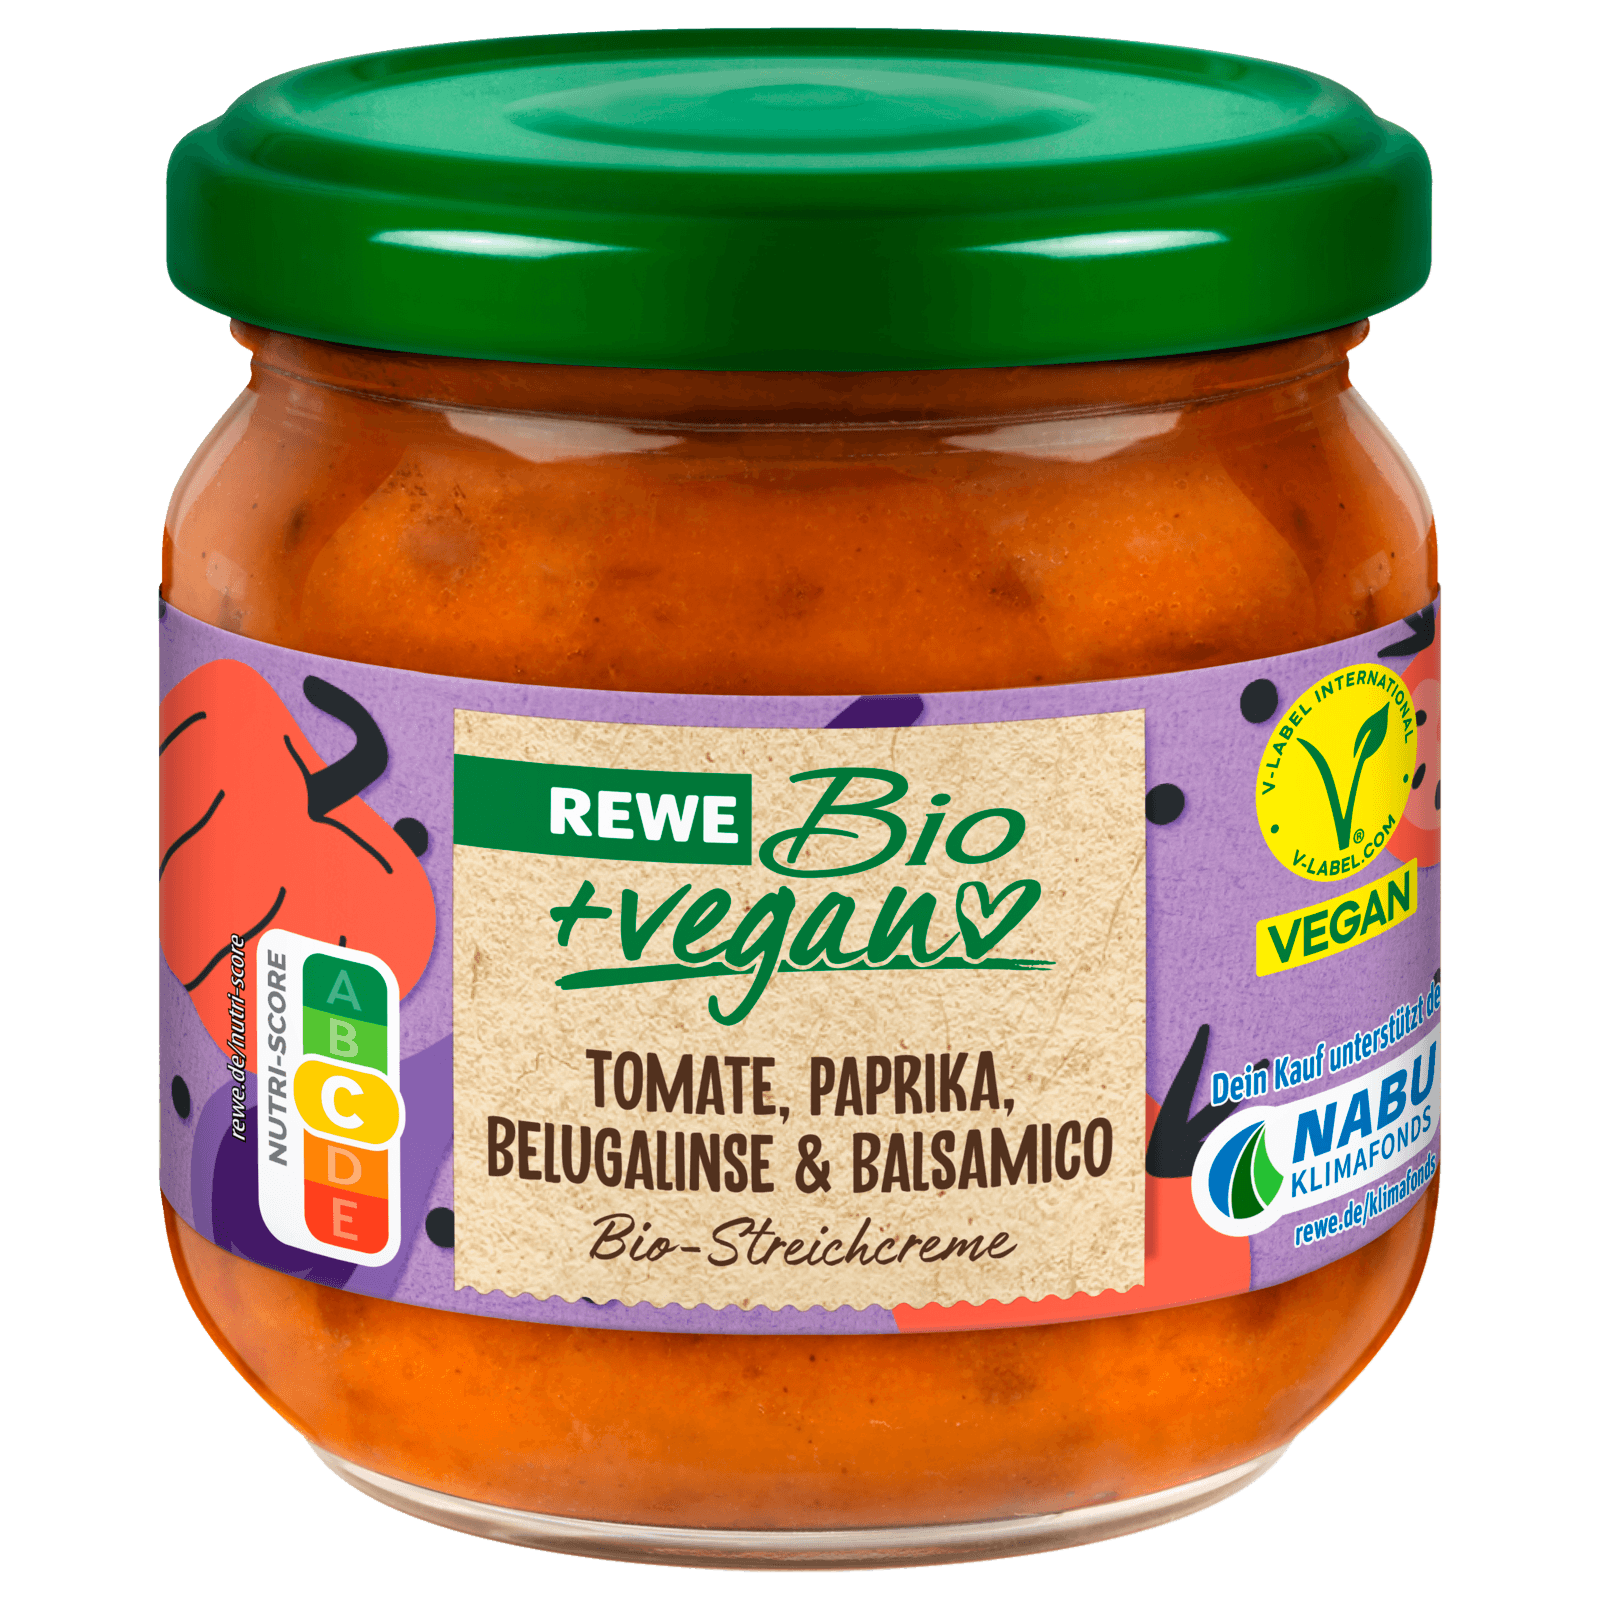 REWE Bio + vegan Streichcreme Tomate, Paprika, Belugalinse & Balsamico 180g